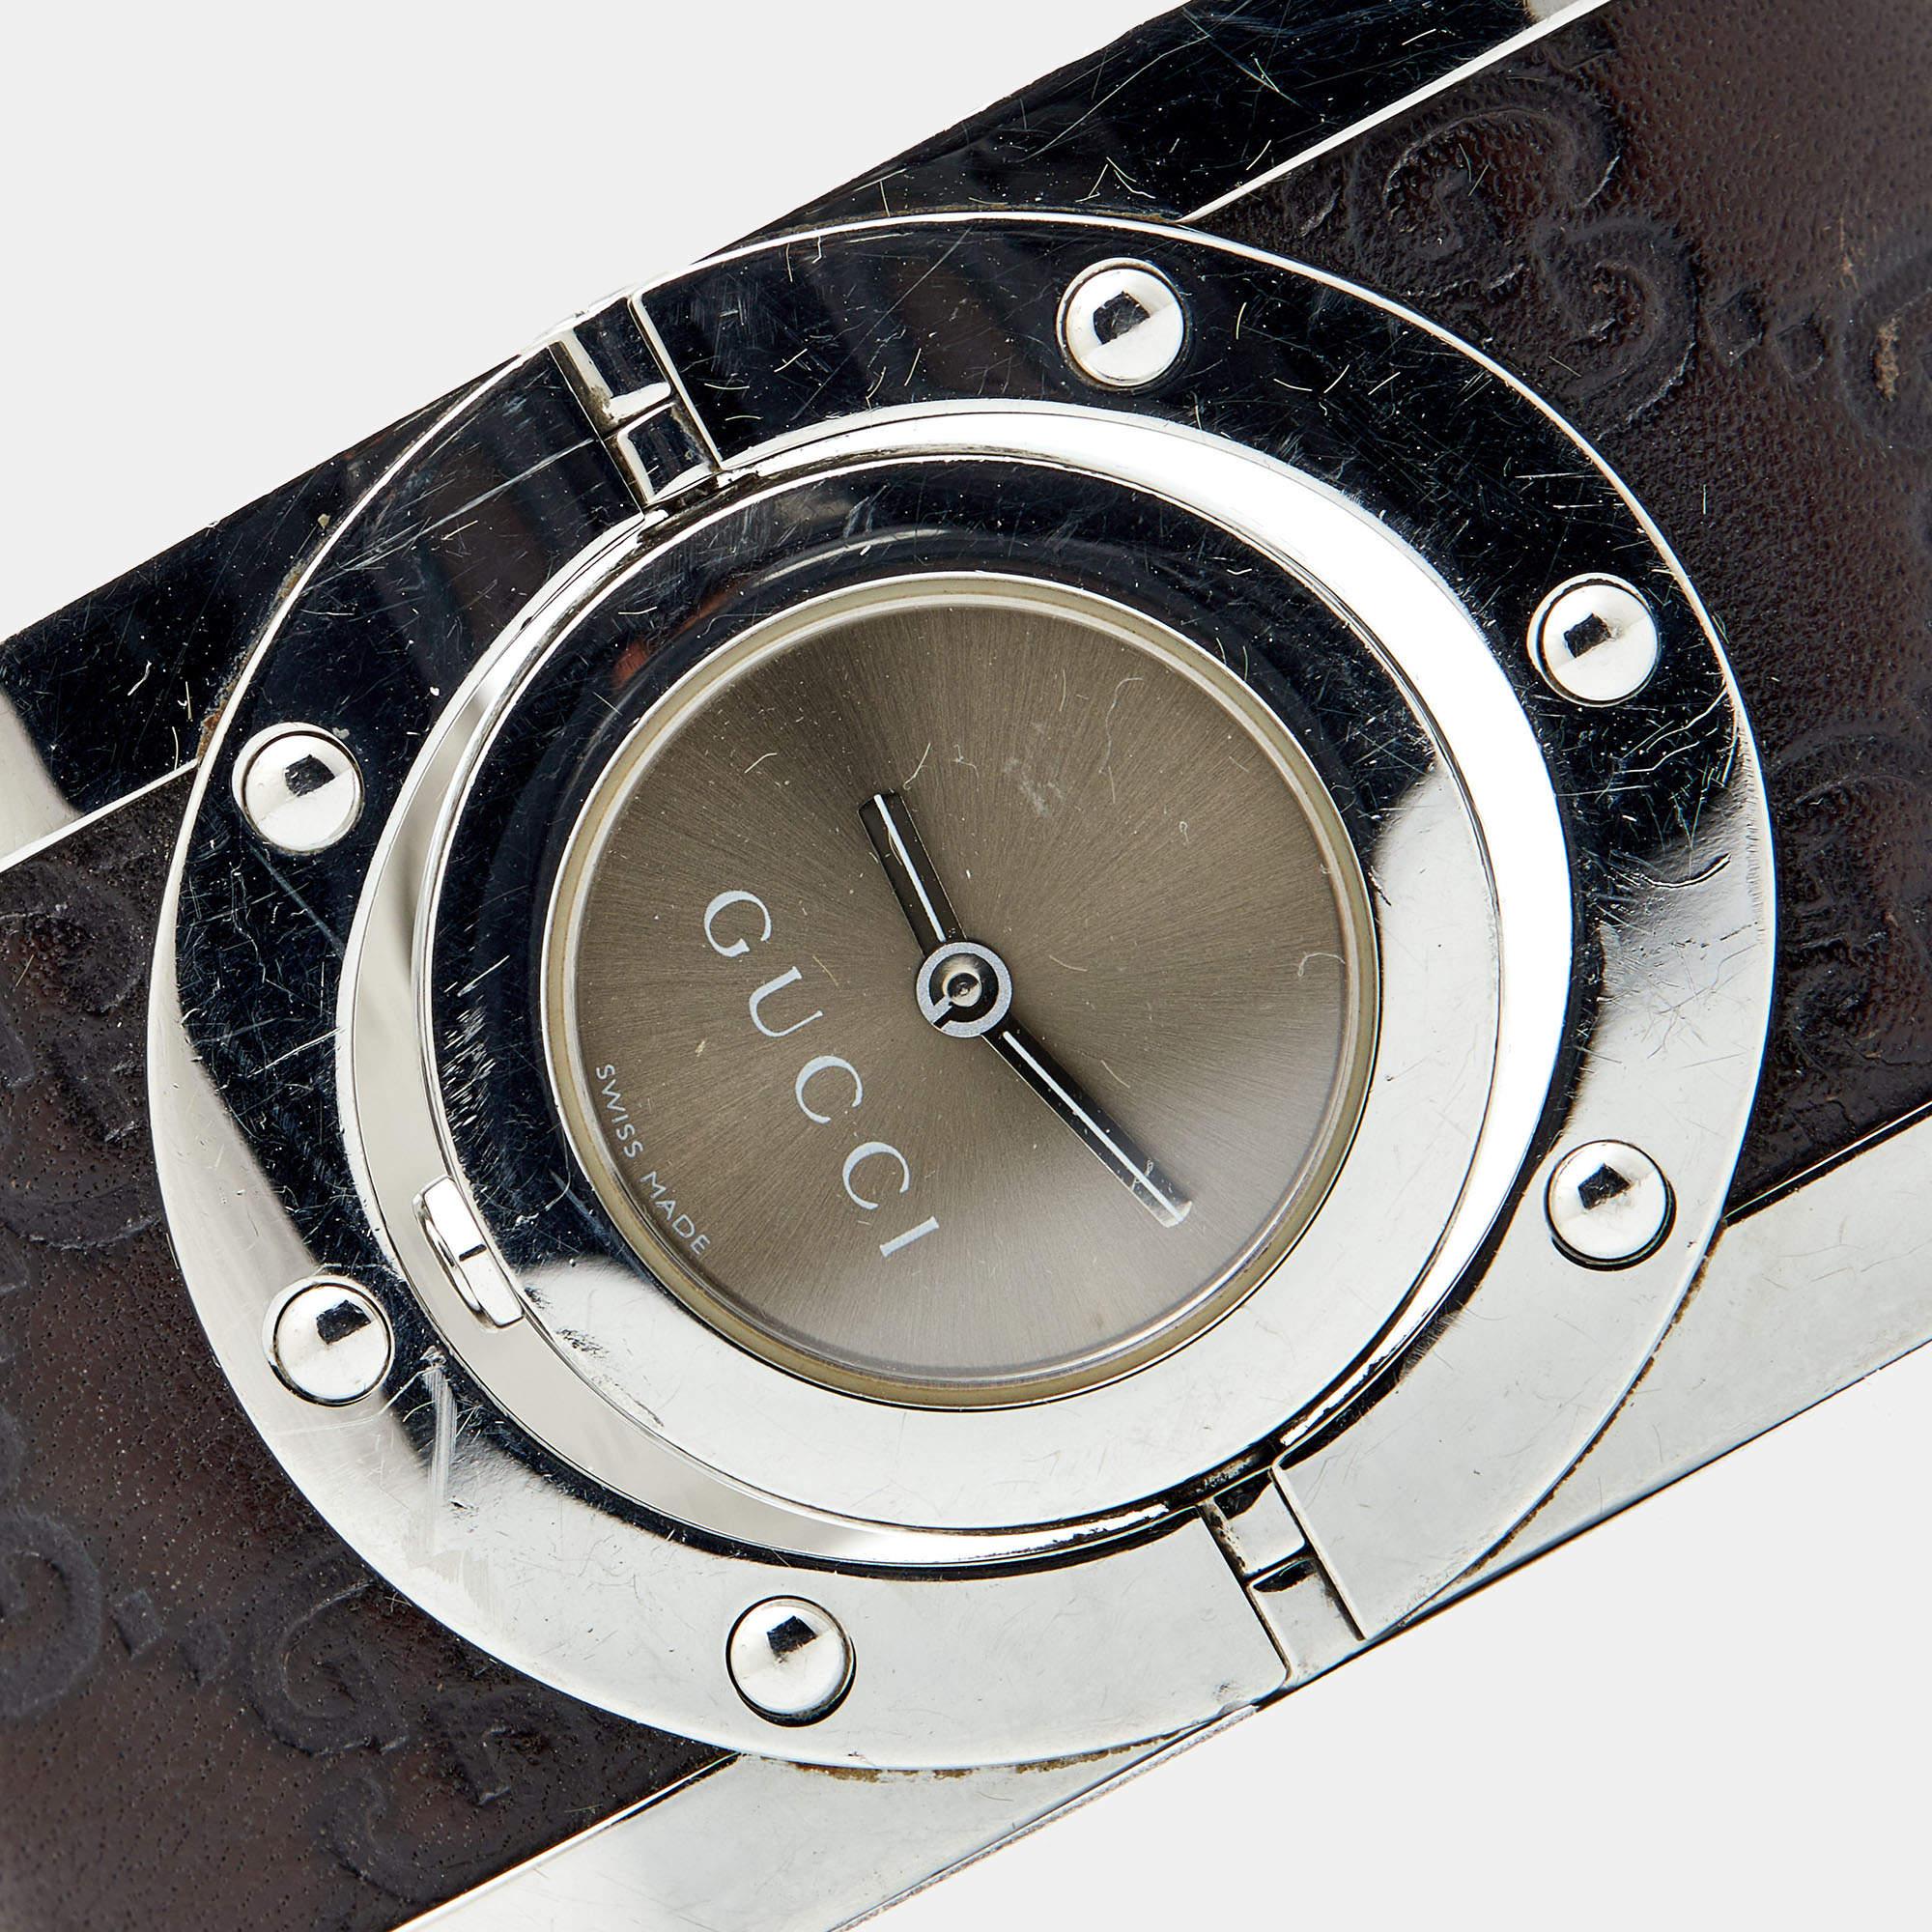 Diese atemberaubend gearbeitete Gucci Twirl Uhr ist die erste Wahl für eine moderne Frau. Der Zeitmesser trägt künstlerische Handwerkskunst aus Edelstahl und Leder zusammen mit schönen Details wie dem schlichten Bronze-Zifferblatt und zwei Zeigern.